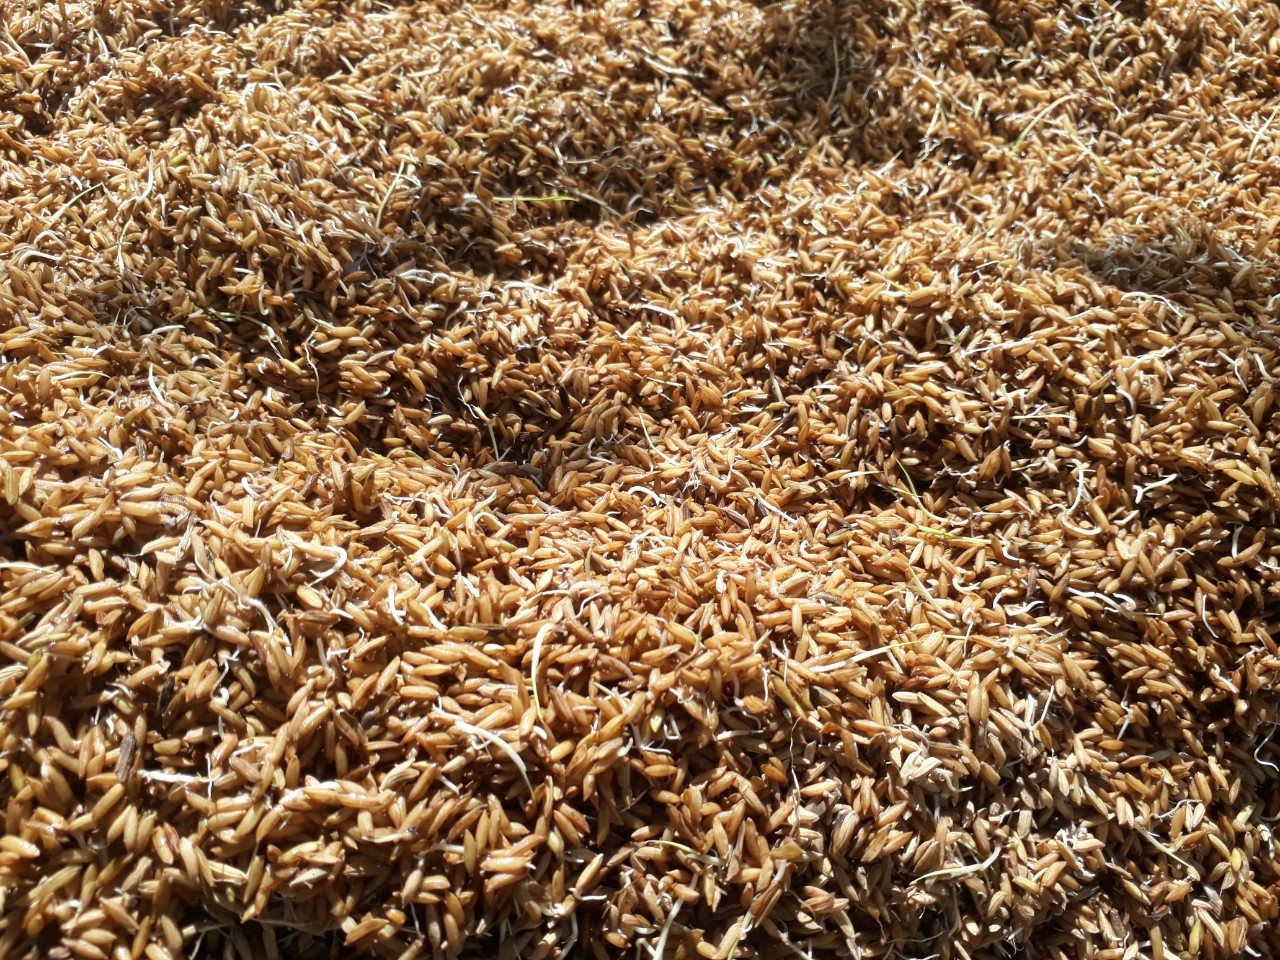 Hầu hết lúa sau khi tuốt đều nẩy mầm, không thể xoay gạo nấu cơm.